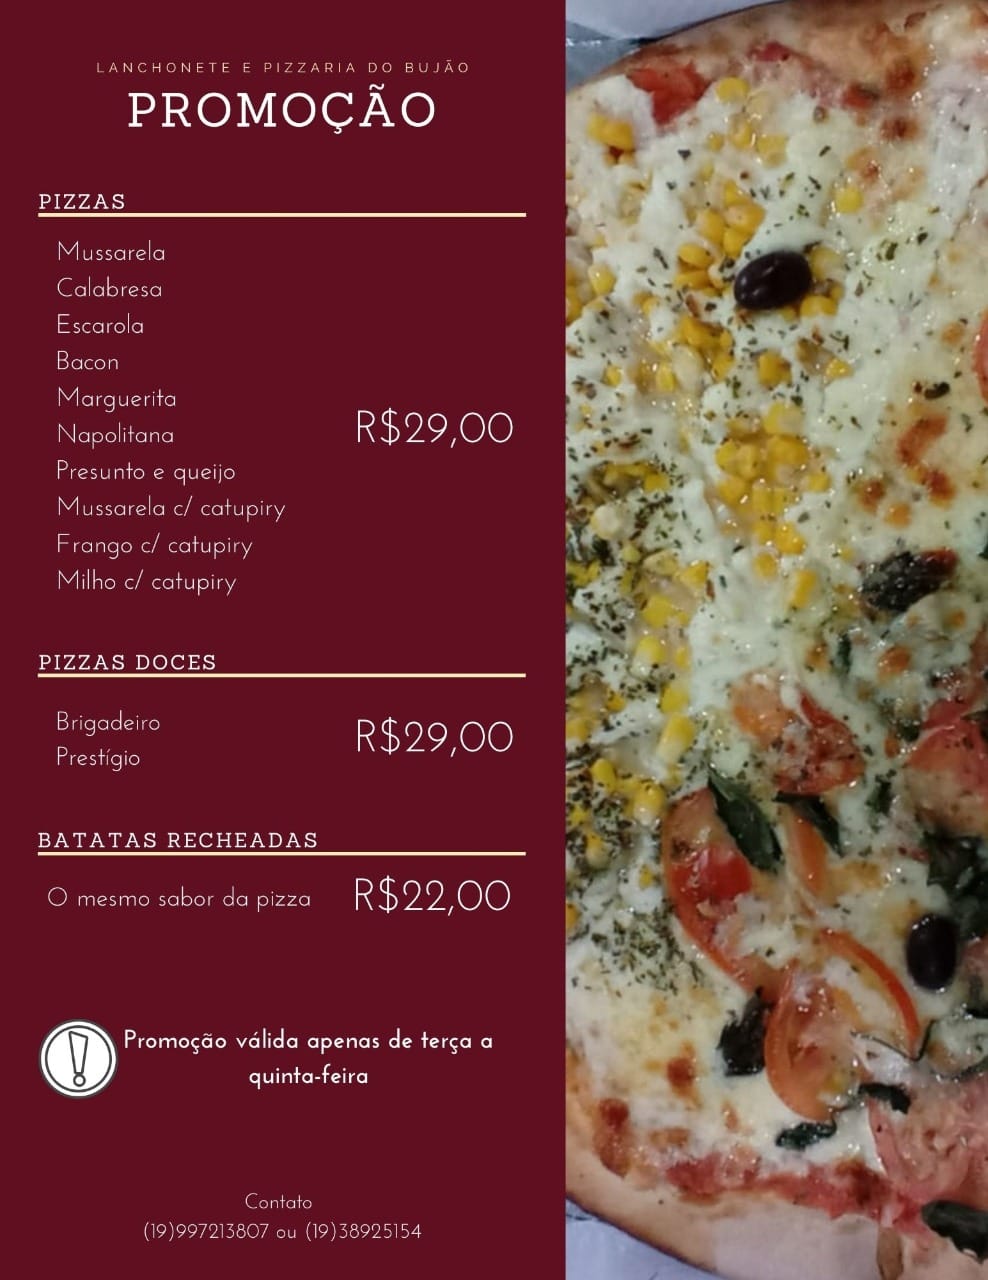 Pizzaria e Lanchonete do Bujão tem promoções para a quinta-feira